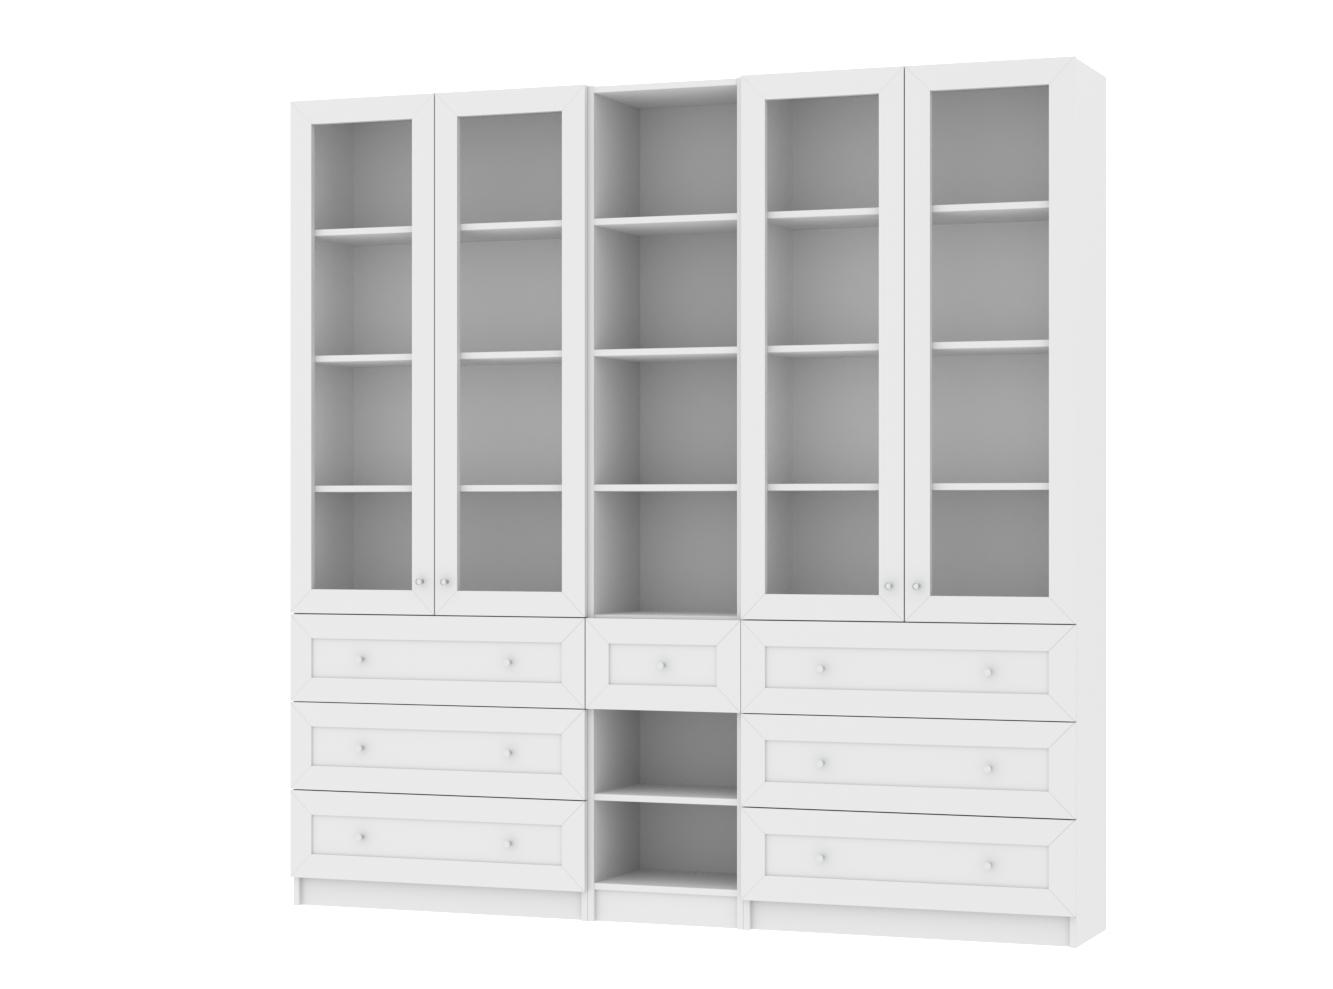 Изображение товара Книжный шкаф Билли 367 white ИКЕА (IKEA), 200x30x202 см на сайте adeta.ru